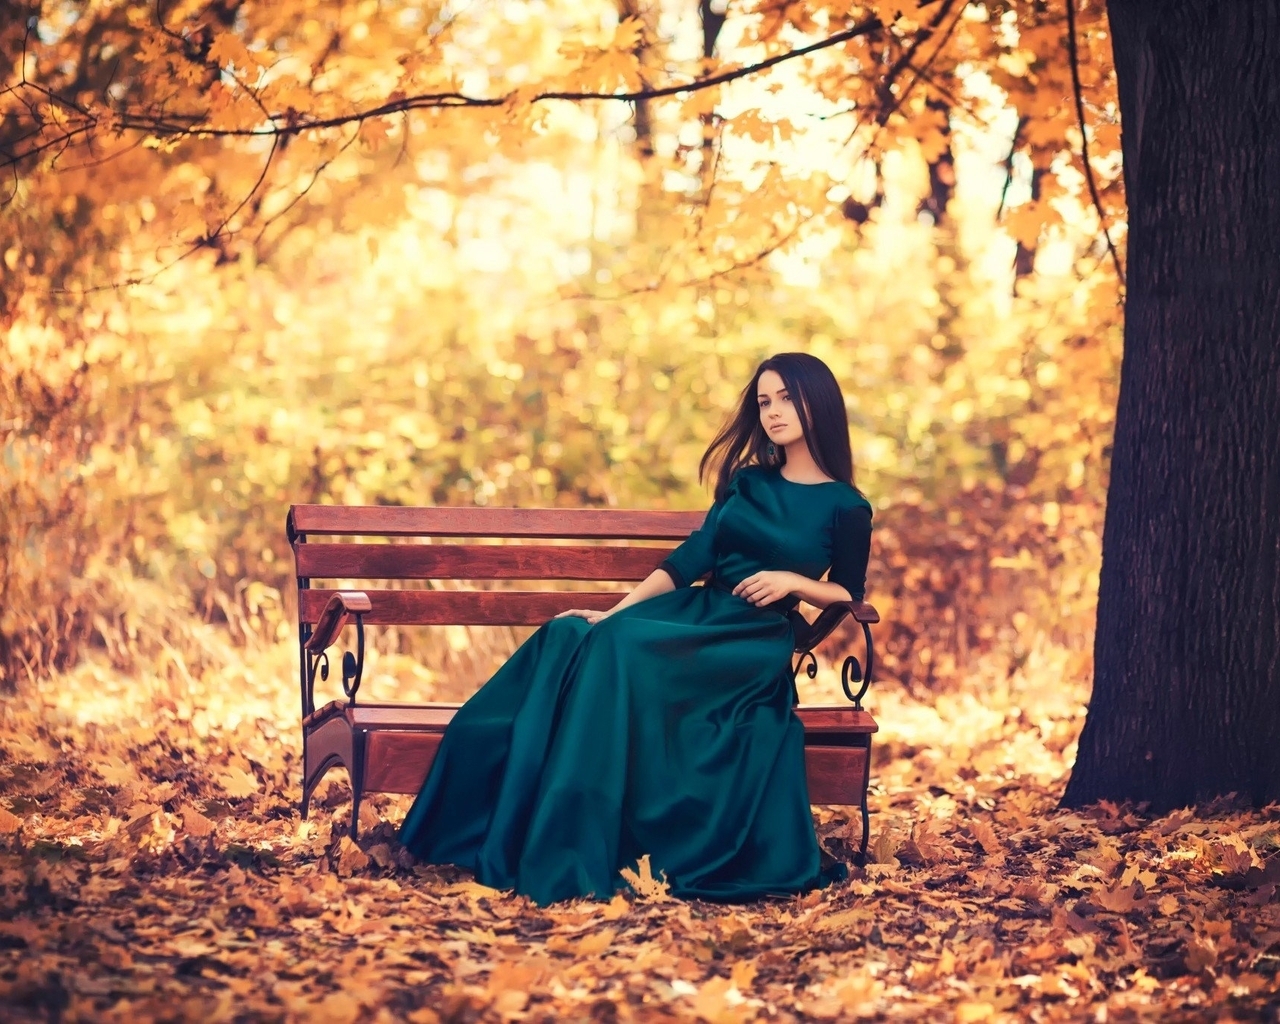 Картинка: Девушка, брюнетка, платье, осень, листья, дерево, парк, скамейка, сидит